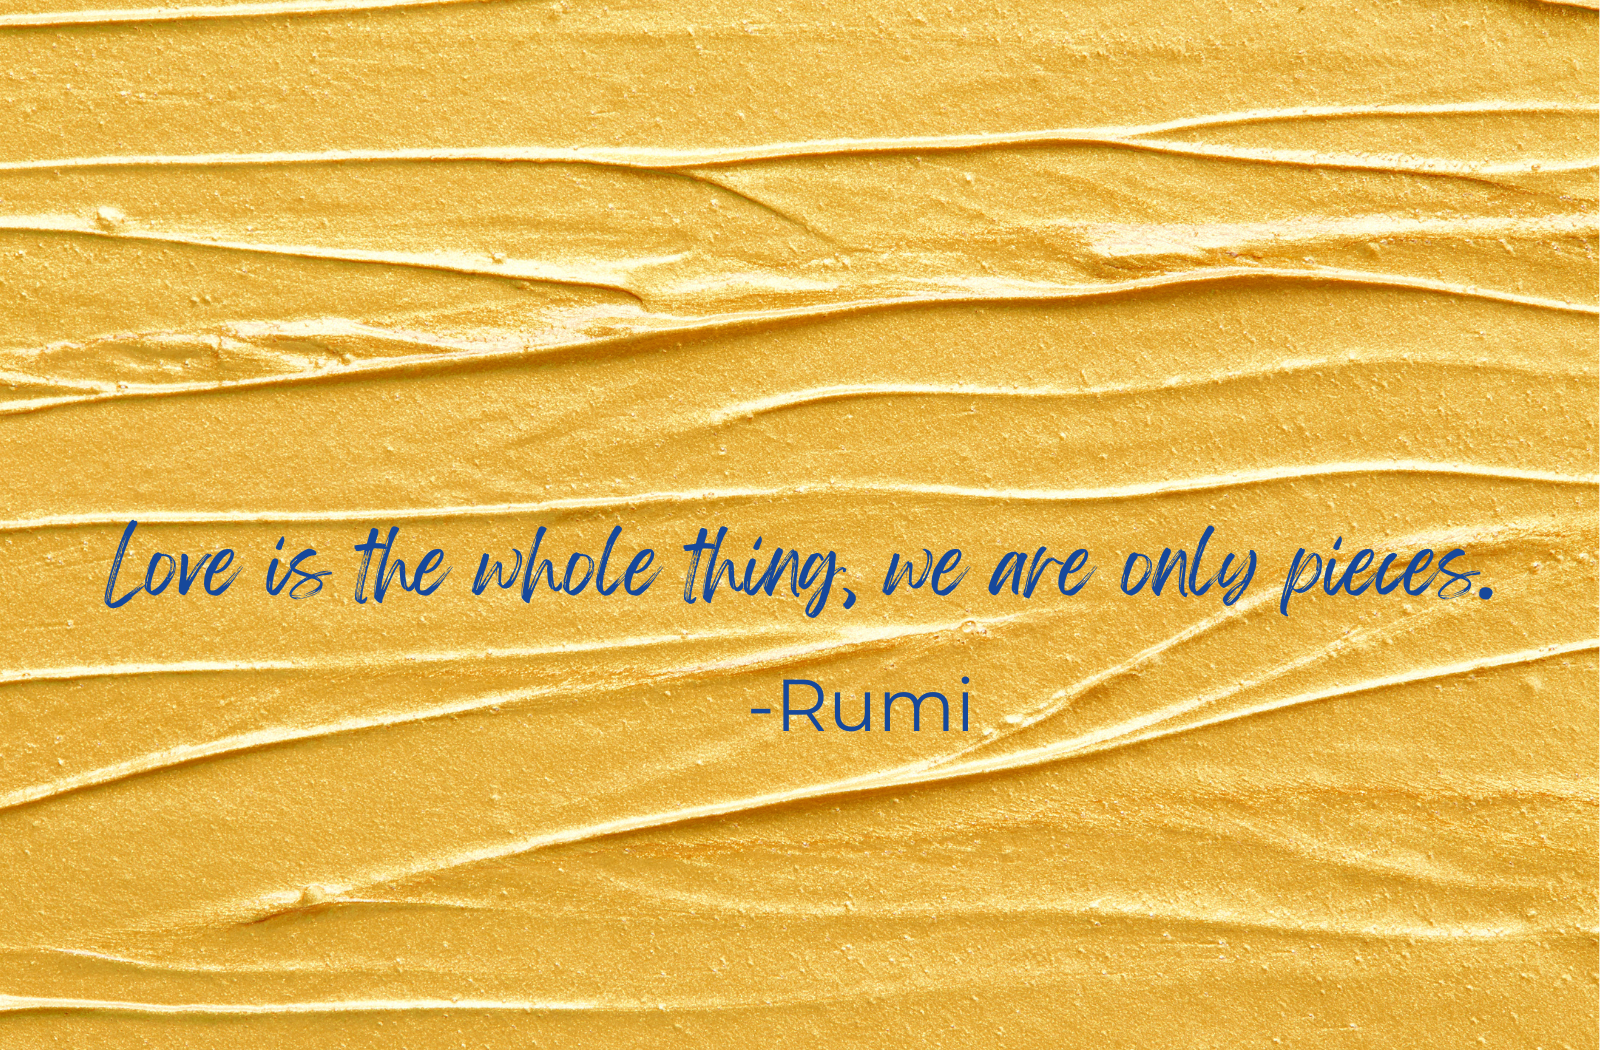 Rumi quote. Art to lift your heart and spirit at https://suedavies.co.uk Sue Davies Artist, Shropshire, UK